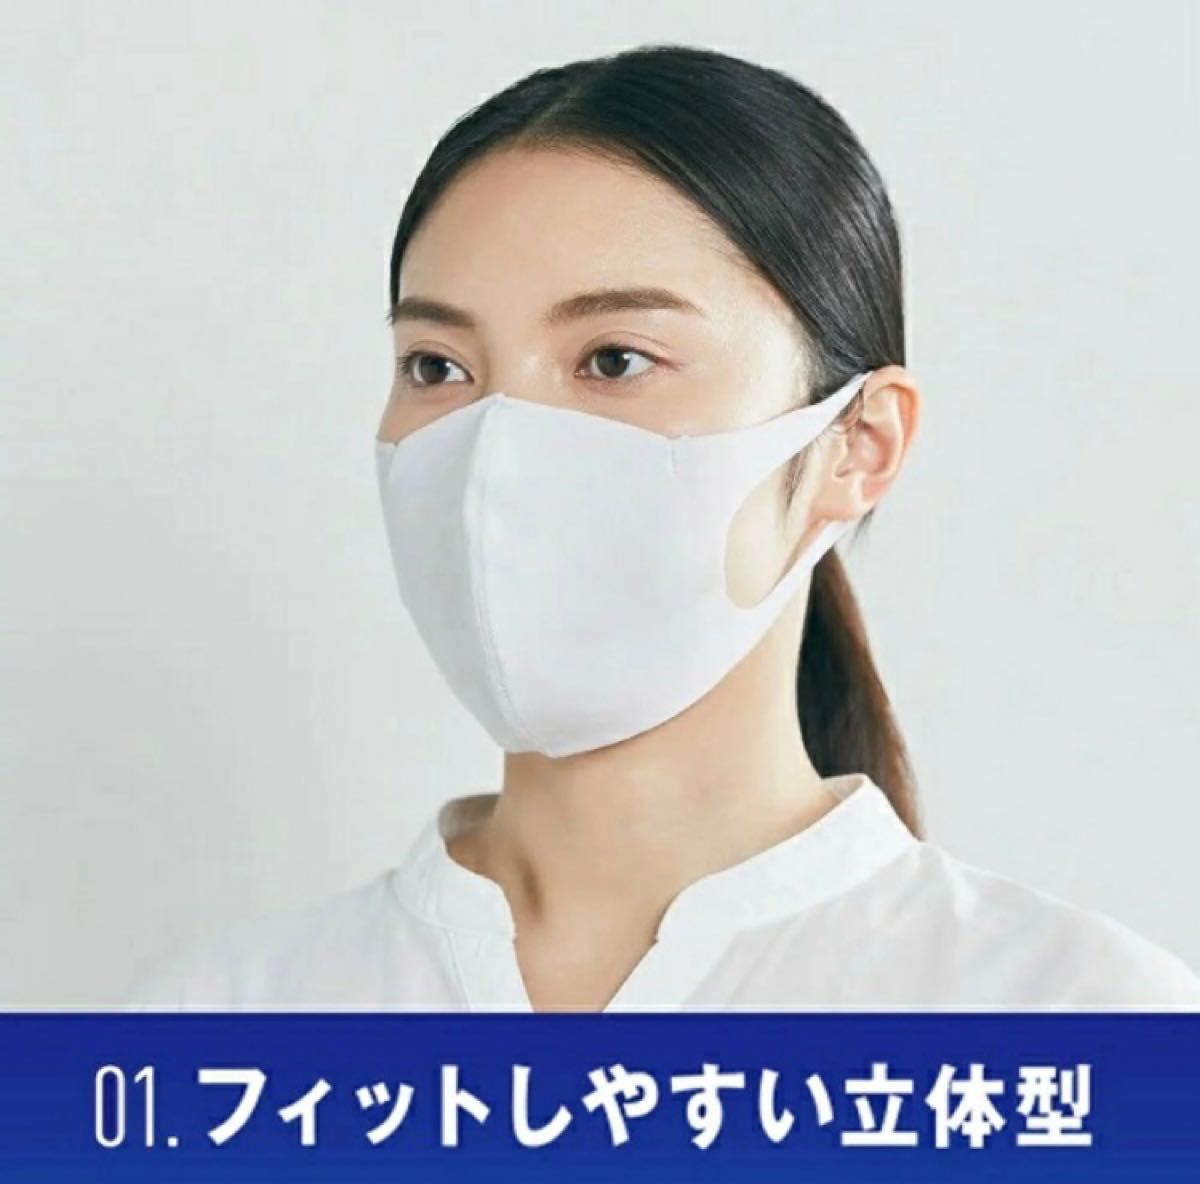 新品 未開封《GUNZE 肌にやさしい 布製 マスク》２枚入り☆８袋☆ライト グレー☆日本製